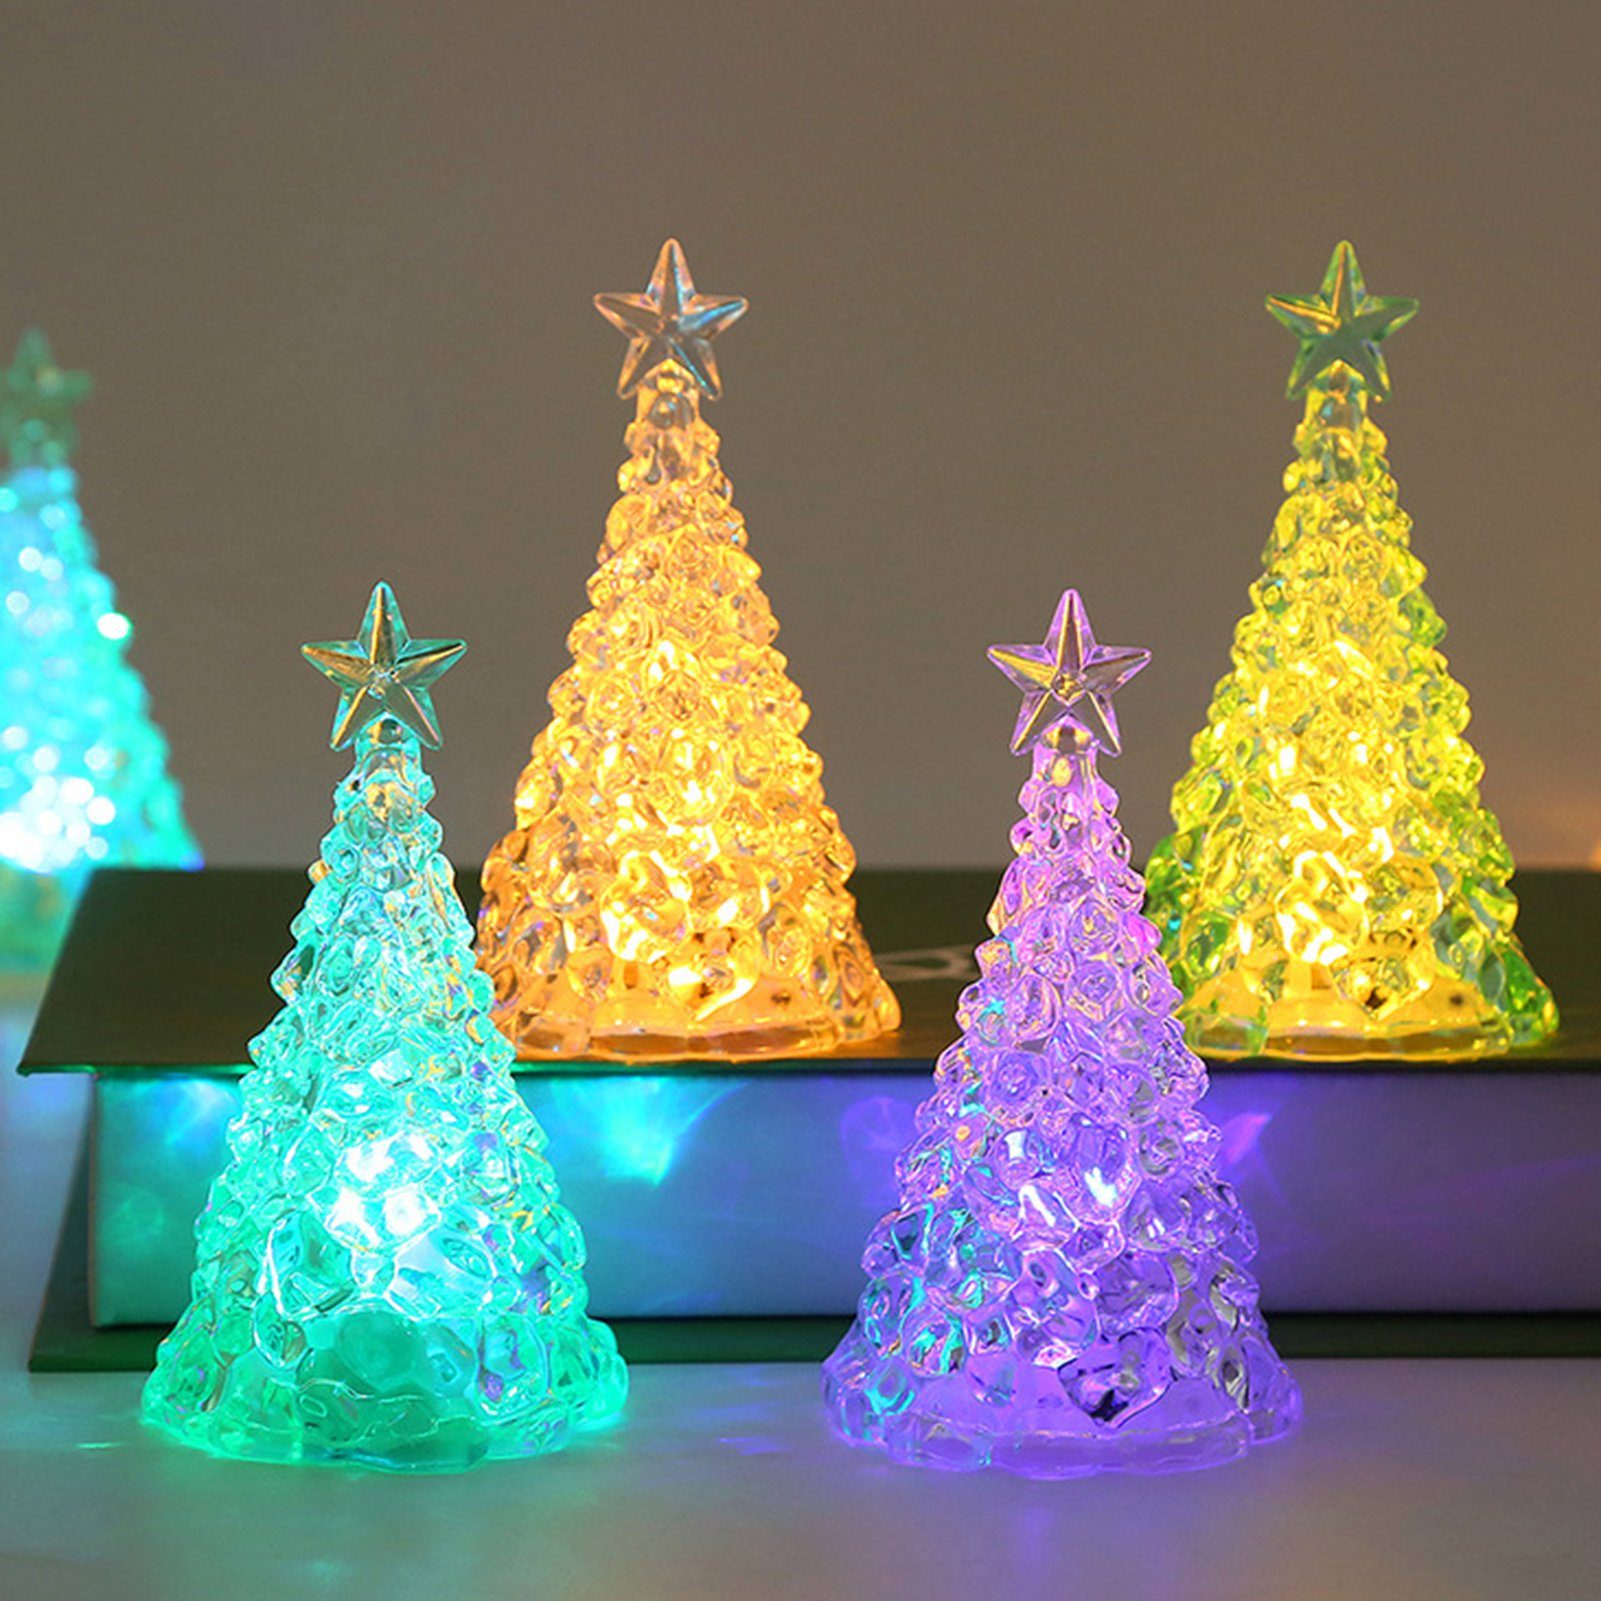 Rutaqian LED Nachtlicht 4 Stück Weihnachtsbaum Nachtlicht Heiligabend Geschenk LED Kerzenlicht, Weihnachtsdekorationen Desktop Ornament Kristall Nachtlicht Bunt | Nachtlichter